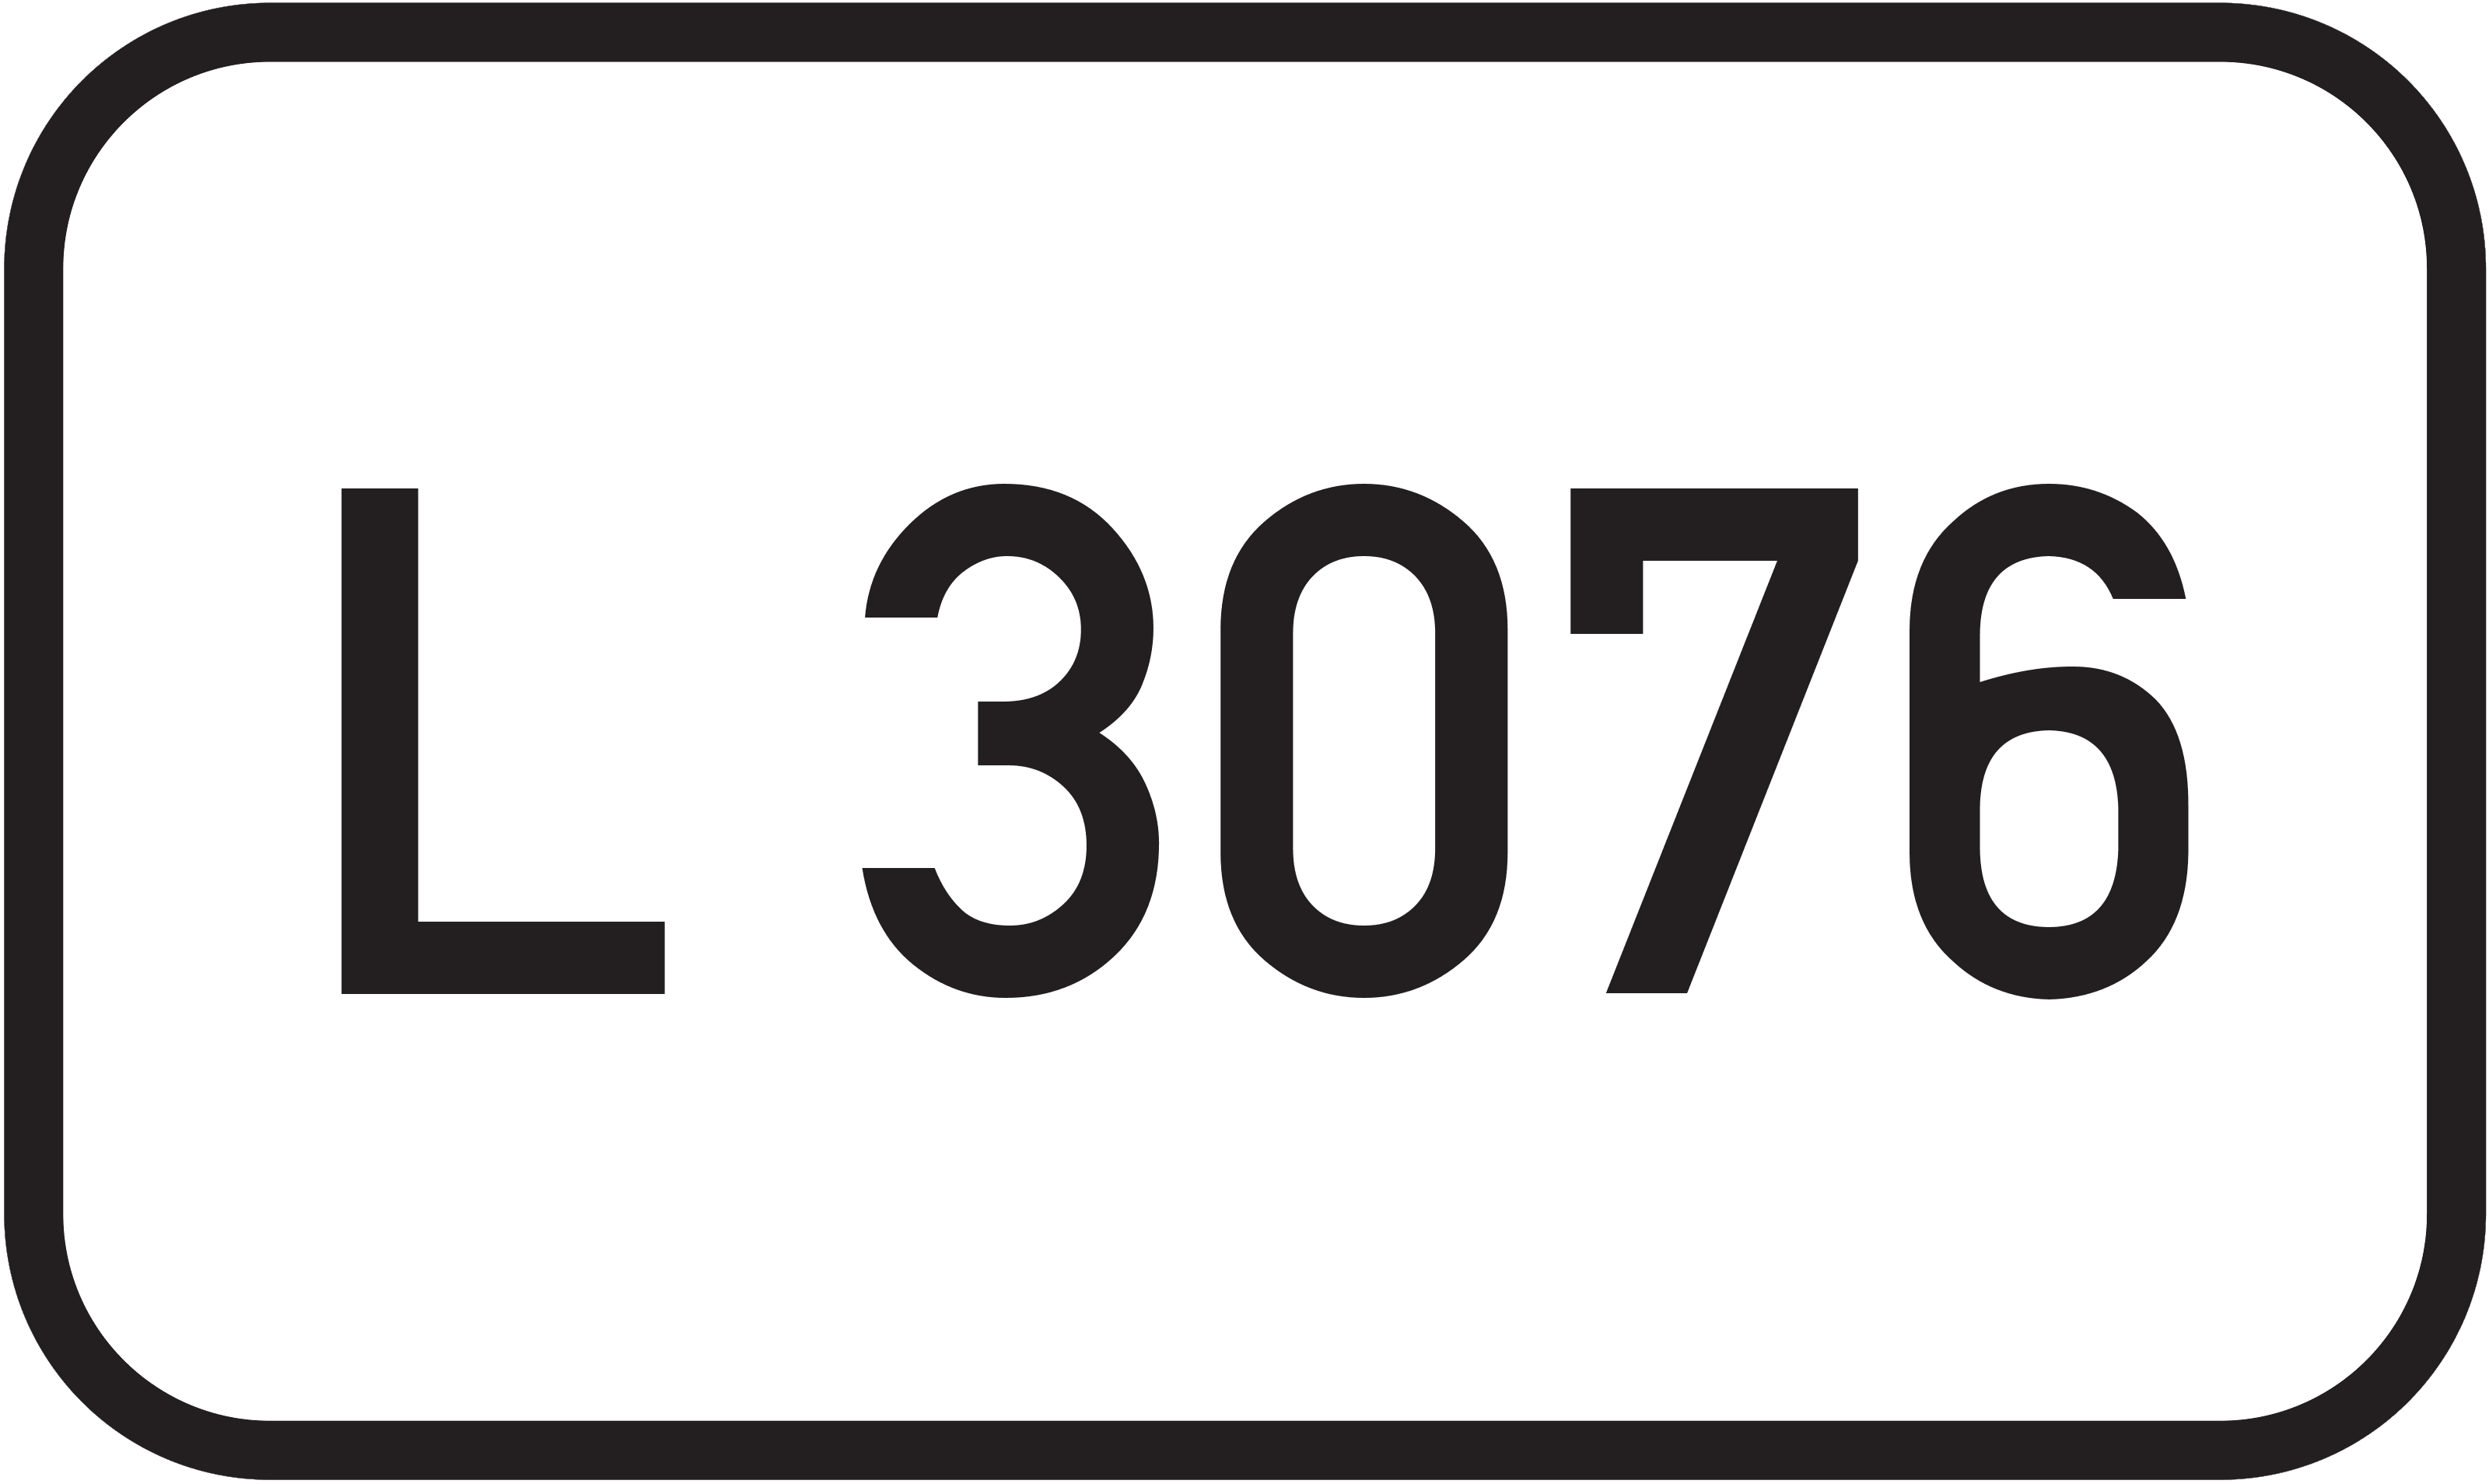 Landesstraße L 3076